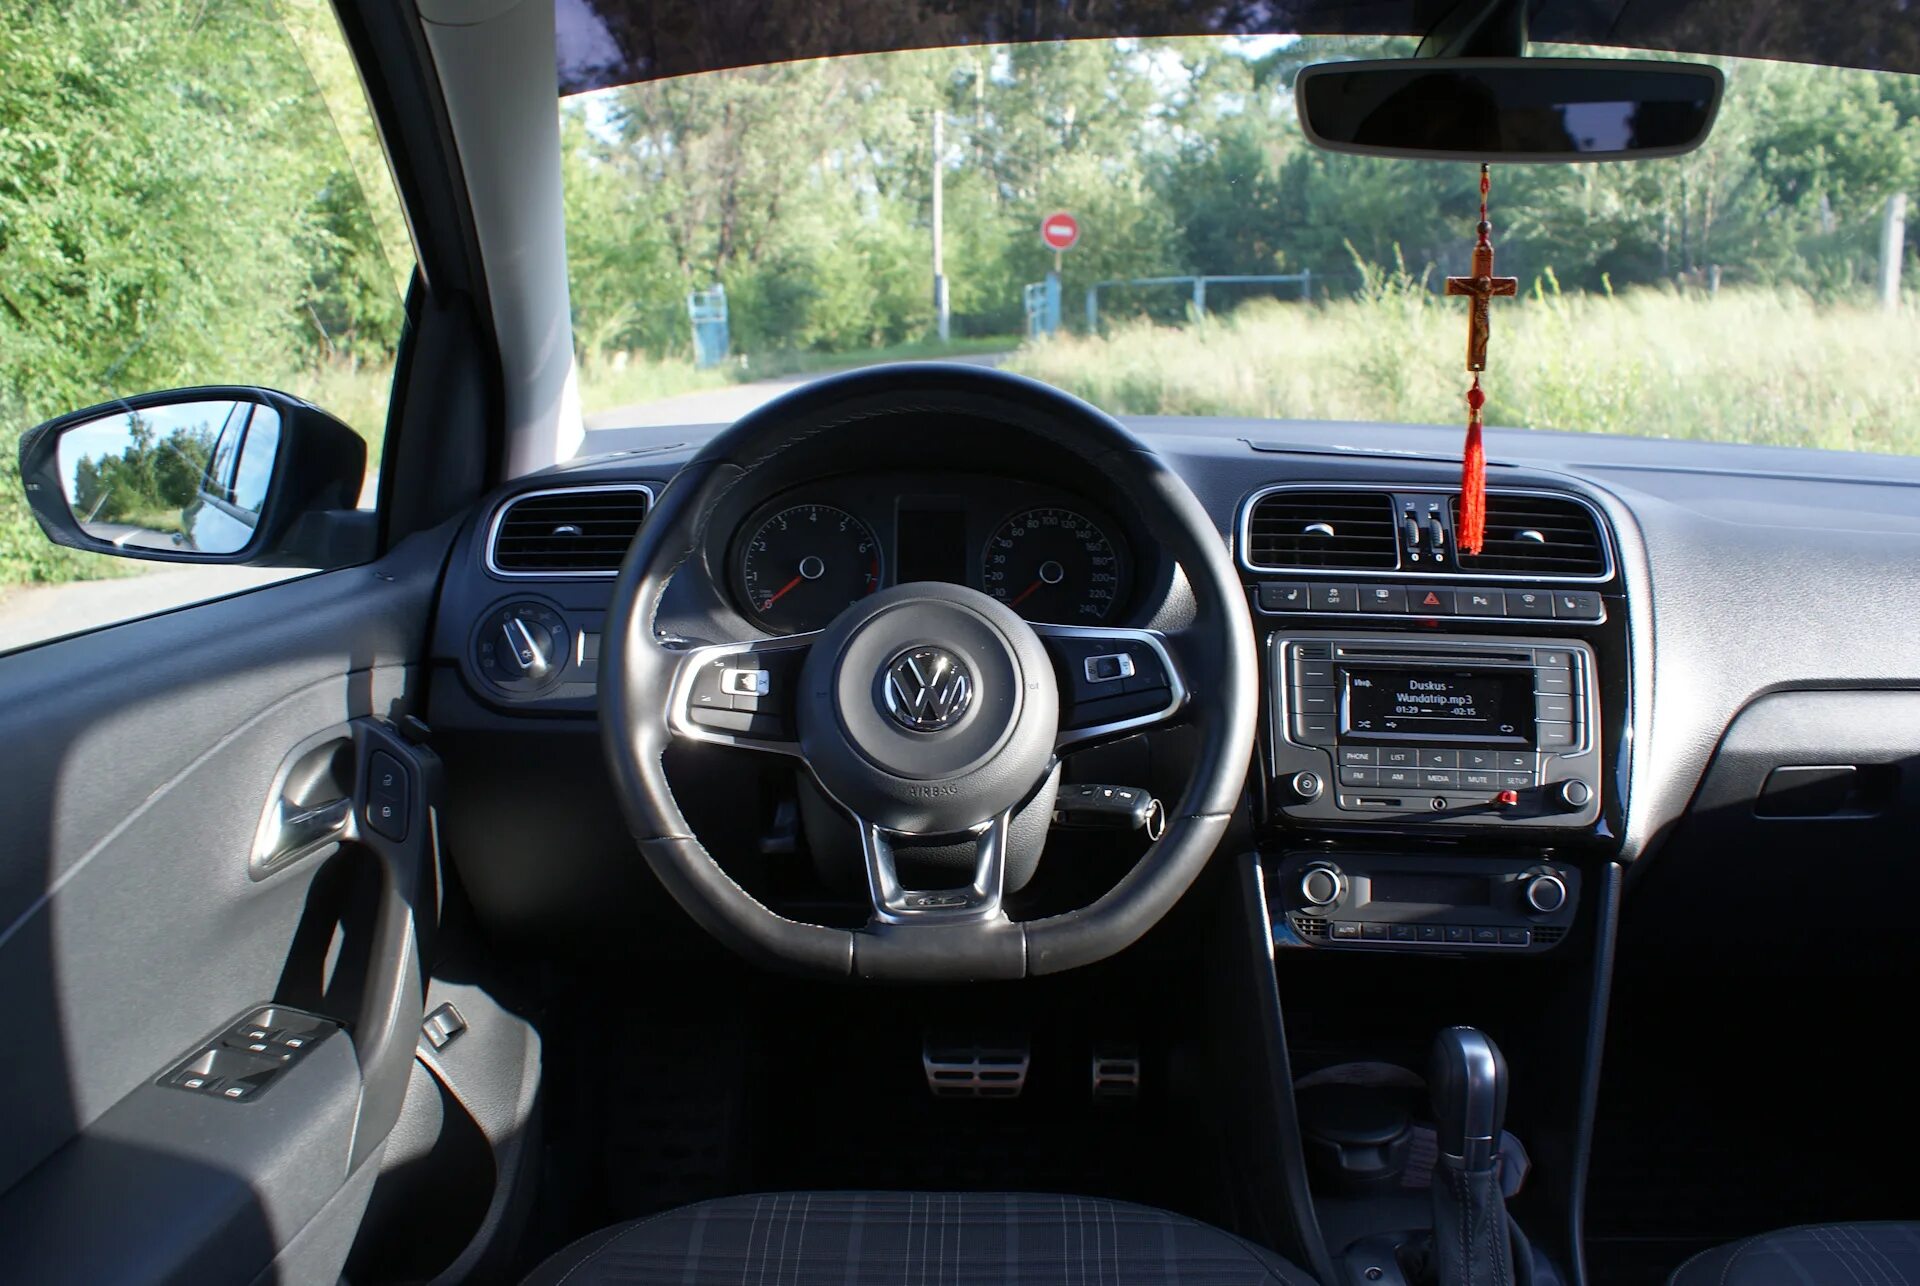 Поло интерьер. Volkswagen Polo интерьер. Volkswagen Polo sedan gt салон. Фольксваген поло 2010 интерьер. Интерьер VW Polo sedan 2017.